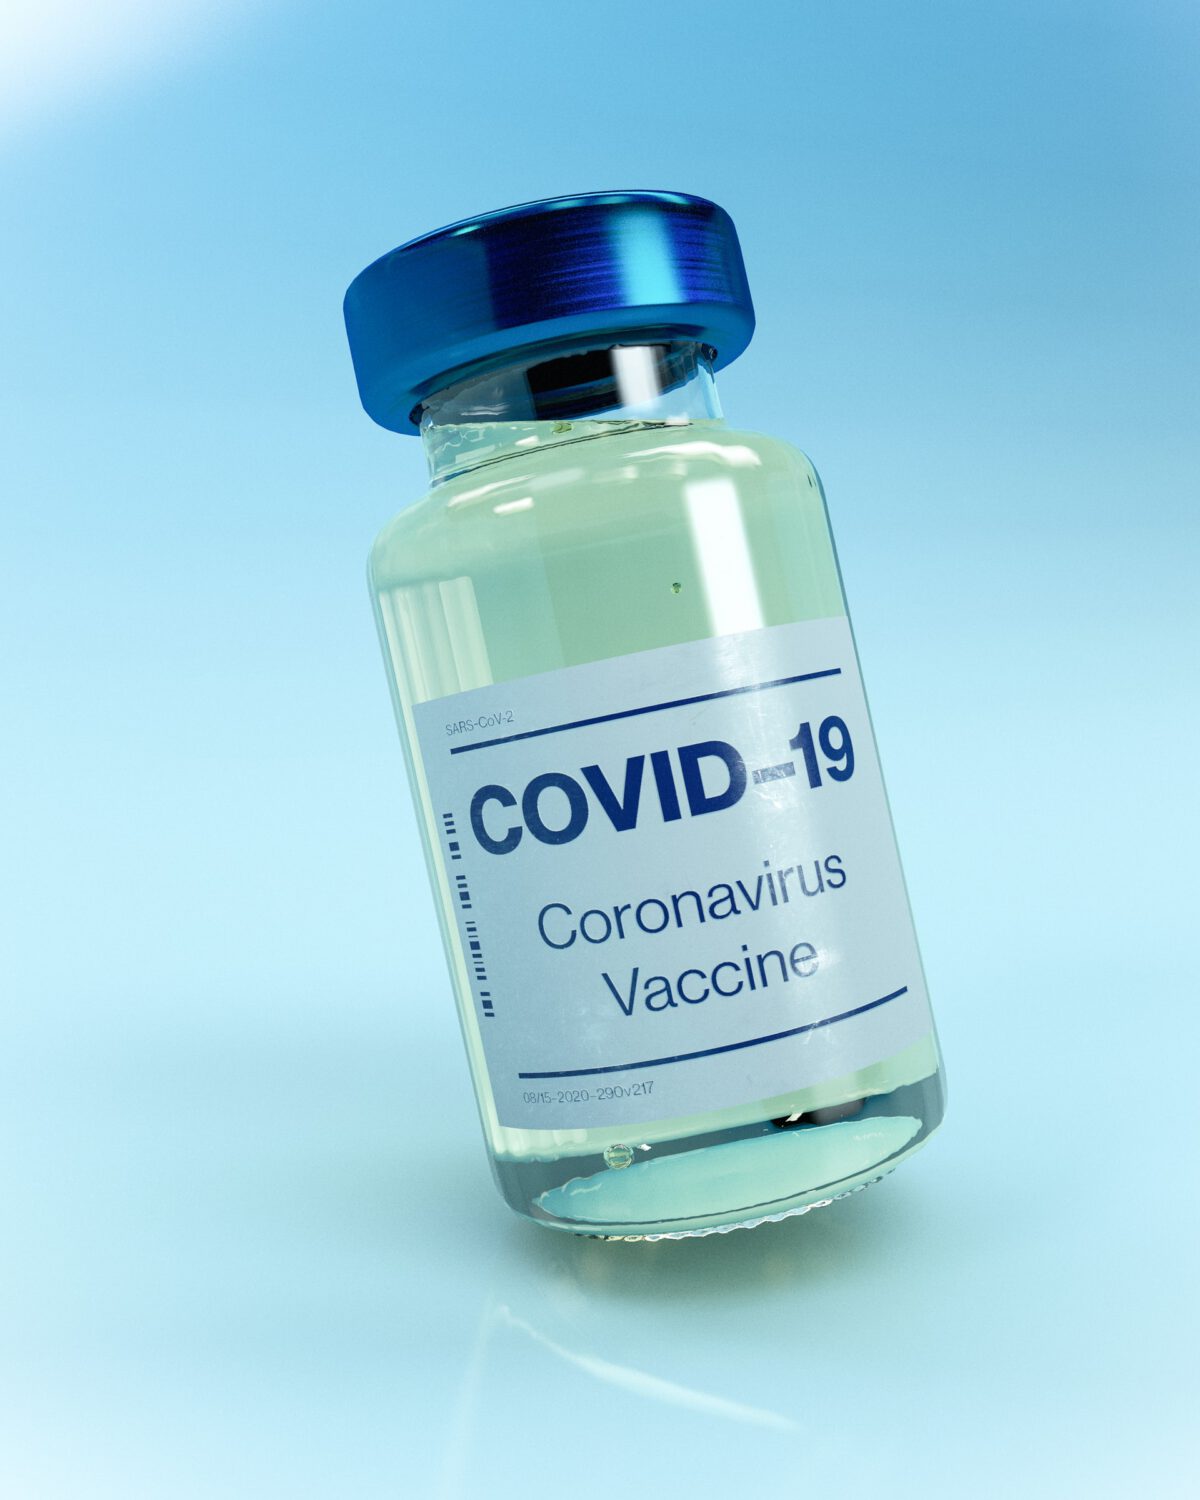 Czy przesyłanie do ministerstwa imion i nazwisk nauczycieli w związku ze szczepieniami przeciw COVID-19 stanowi naruszenie ich prywatności